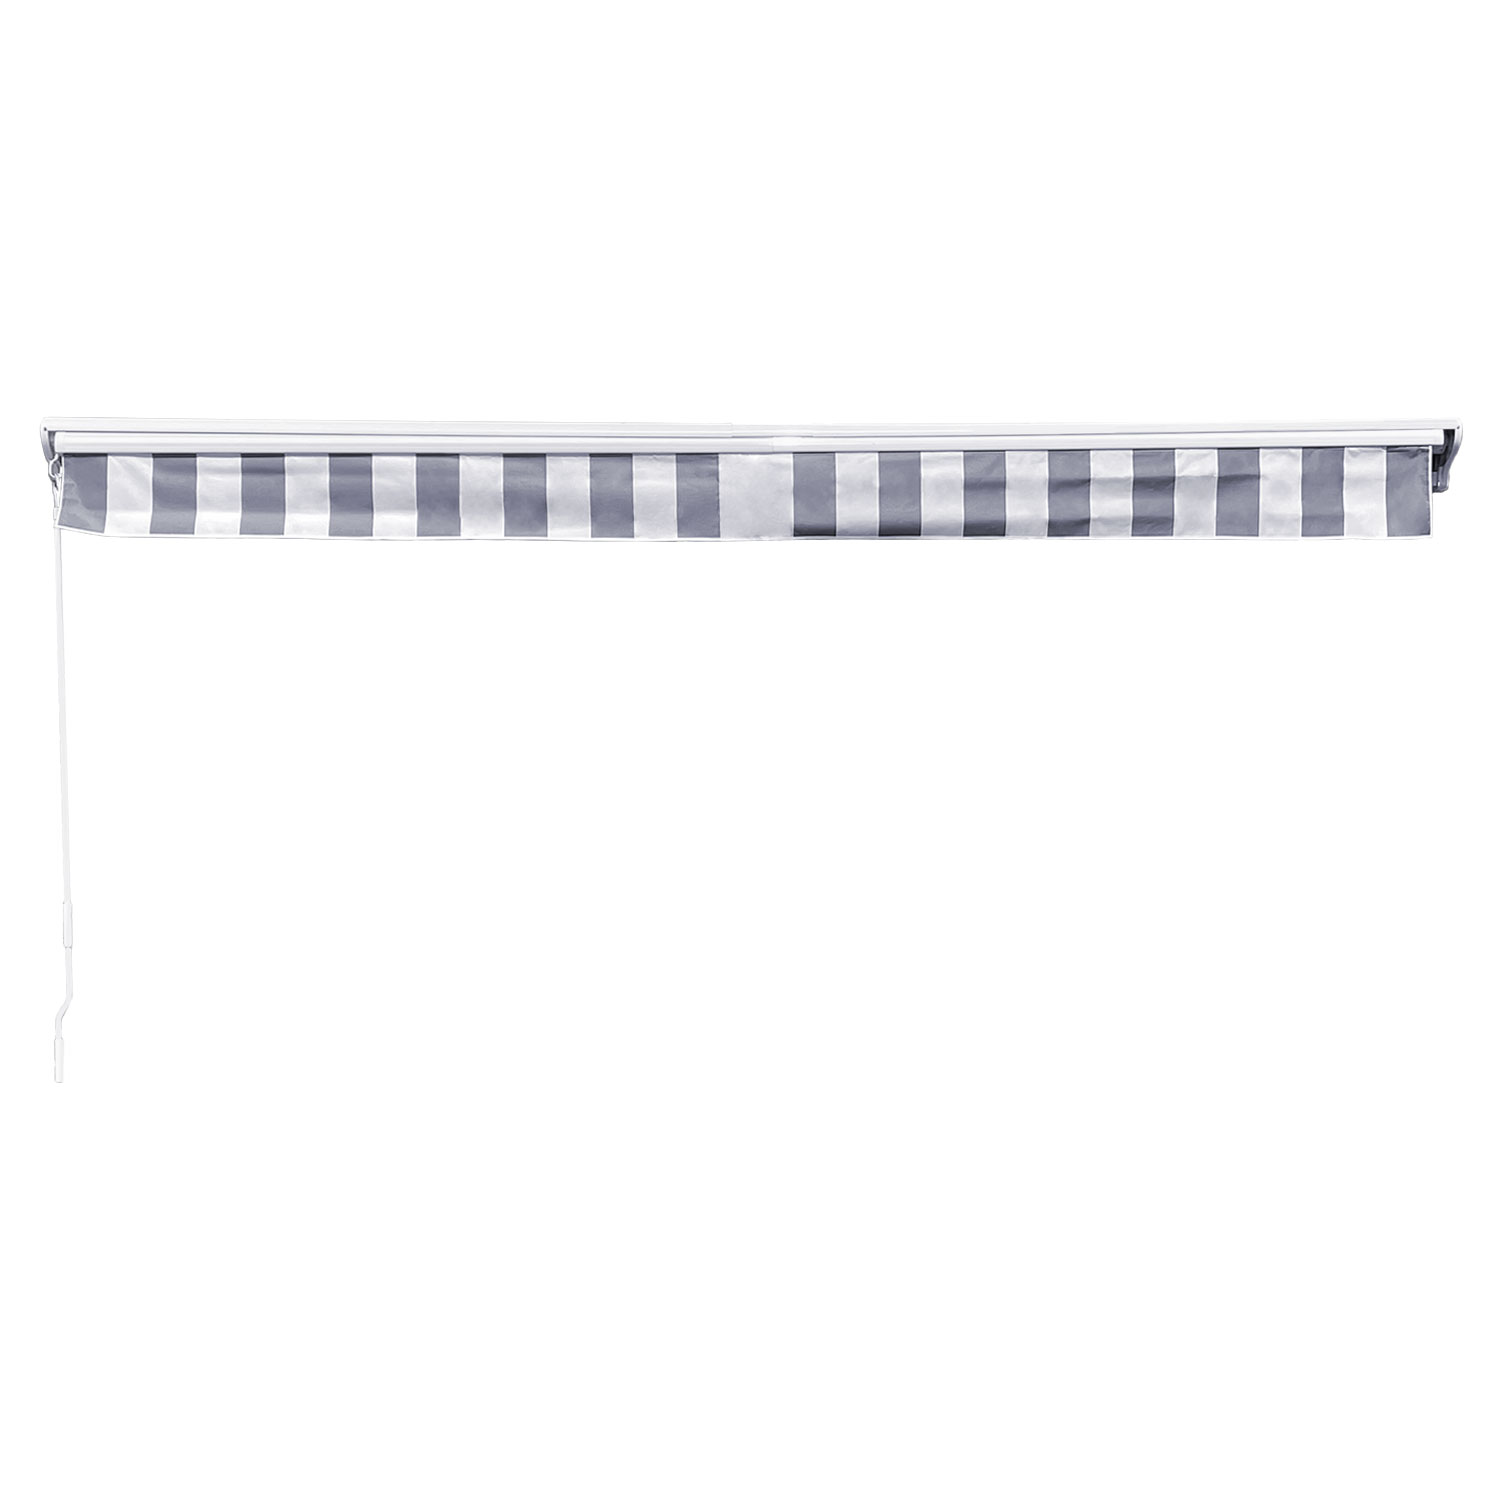 Tenda SAULE 3,95 × 3 m con semicupio - Tessuto a righe bianco/grigio e struttura bianca